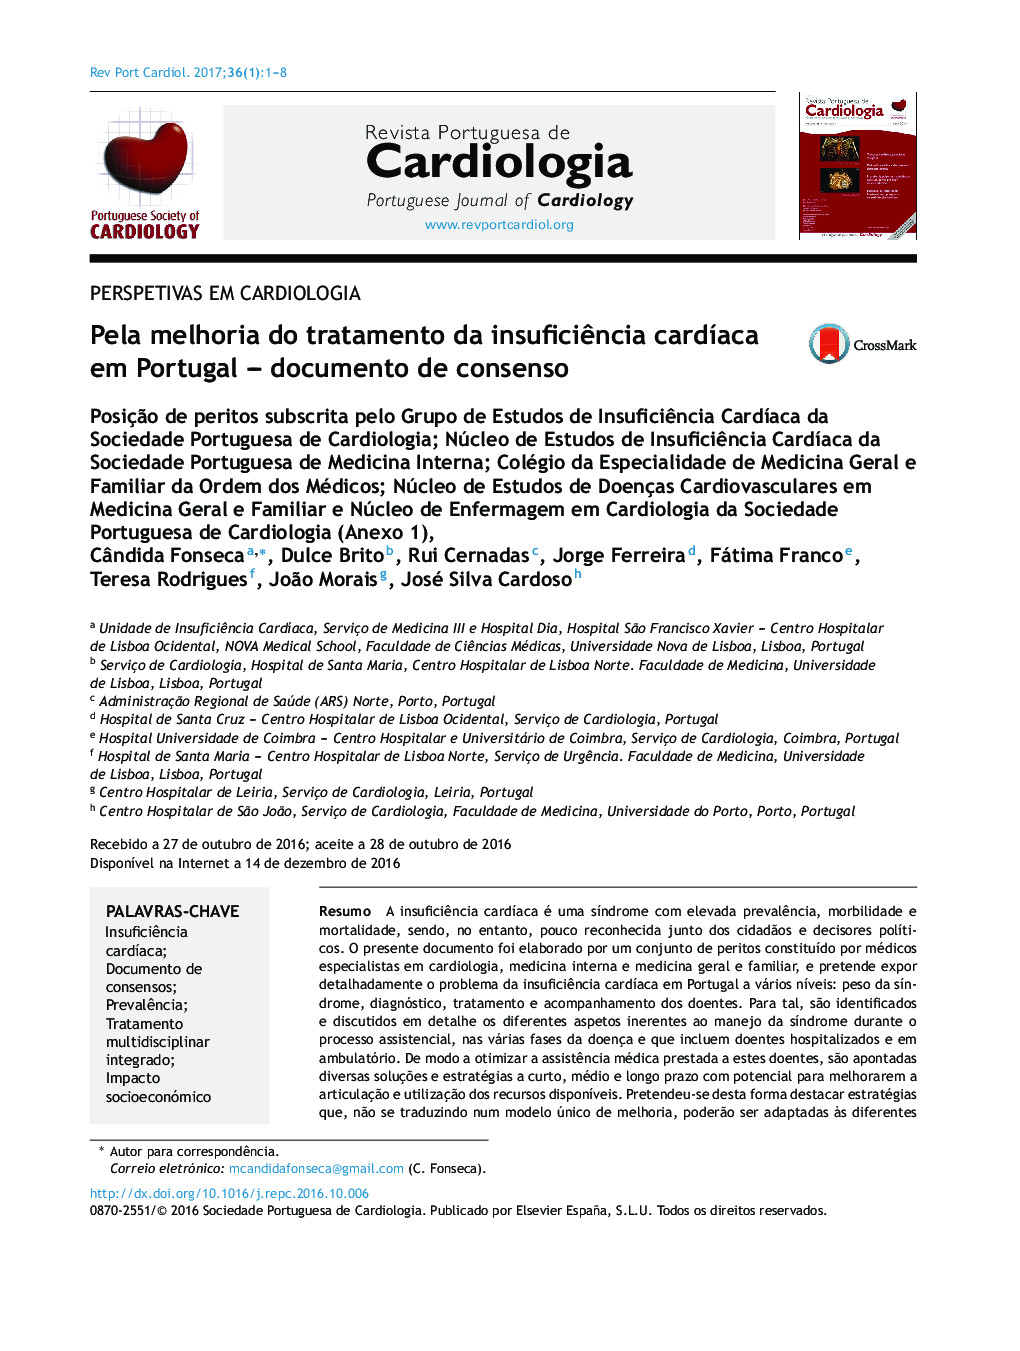 Pela melhoria do tratamento da insuficiÃªncia cardÃ­aca em Portugal - documento de consenso